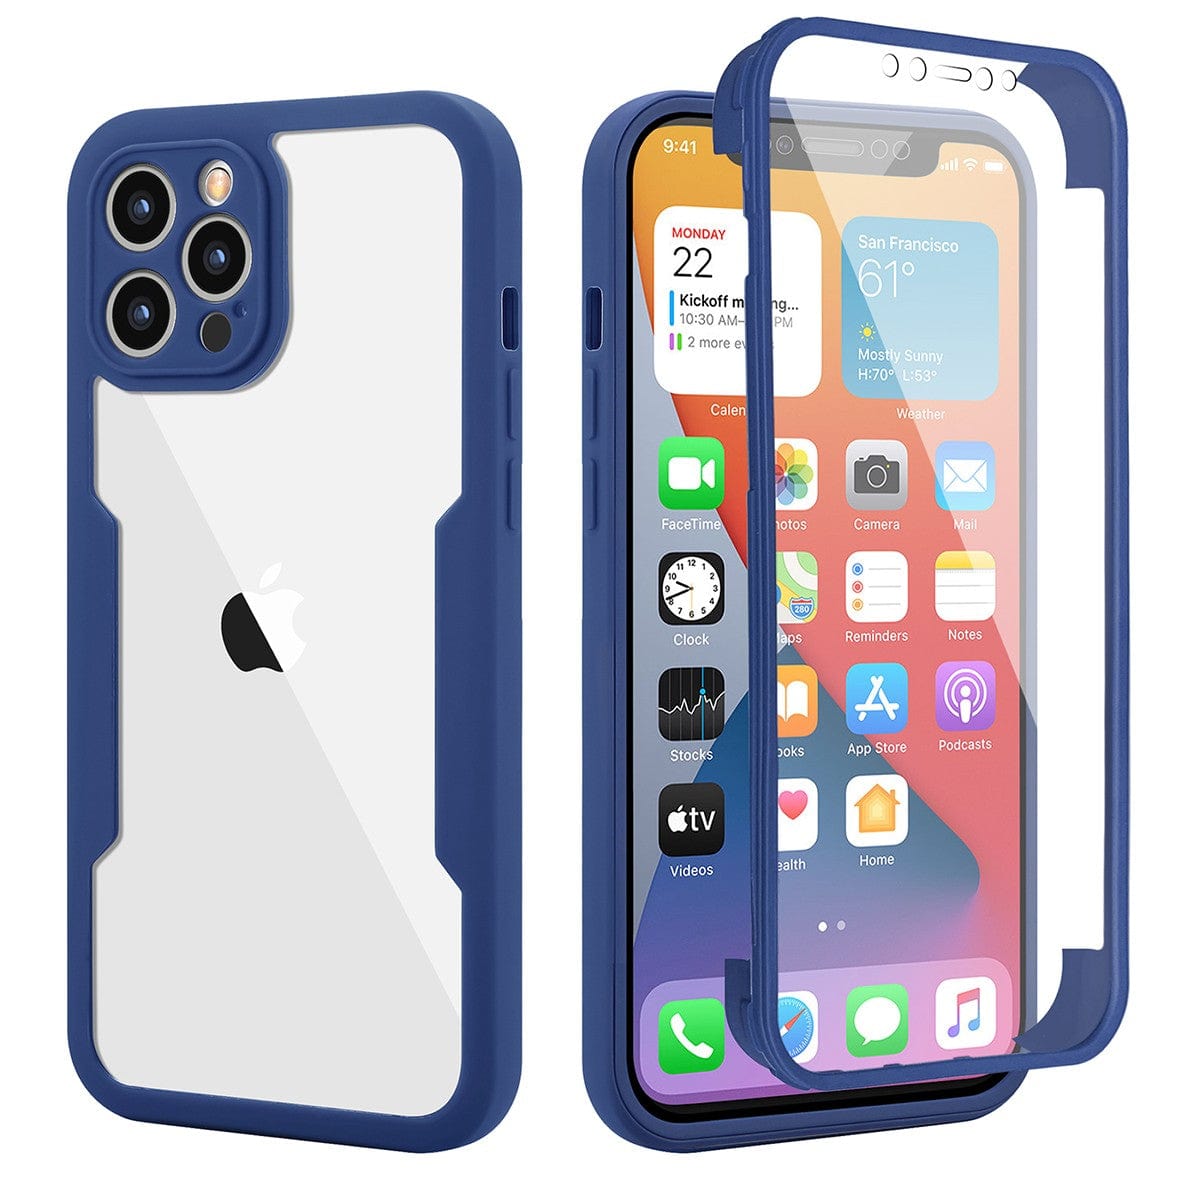 Husa Max Defence pentru iPhone 11, Albastru, Fata Dubla Transparenta, Protectie Antisoc Full 360 ( fata, spate, margini )